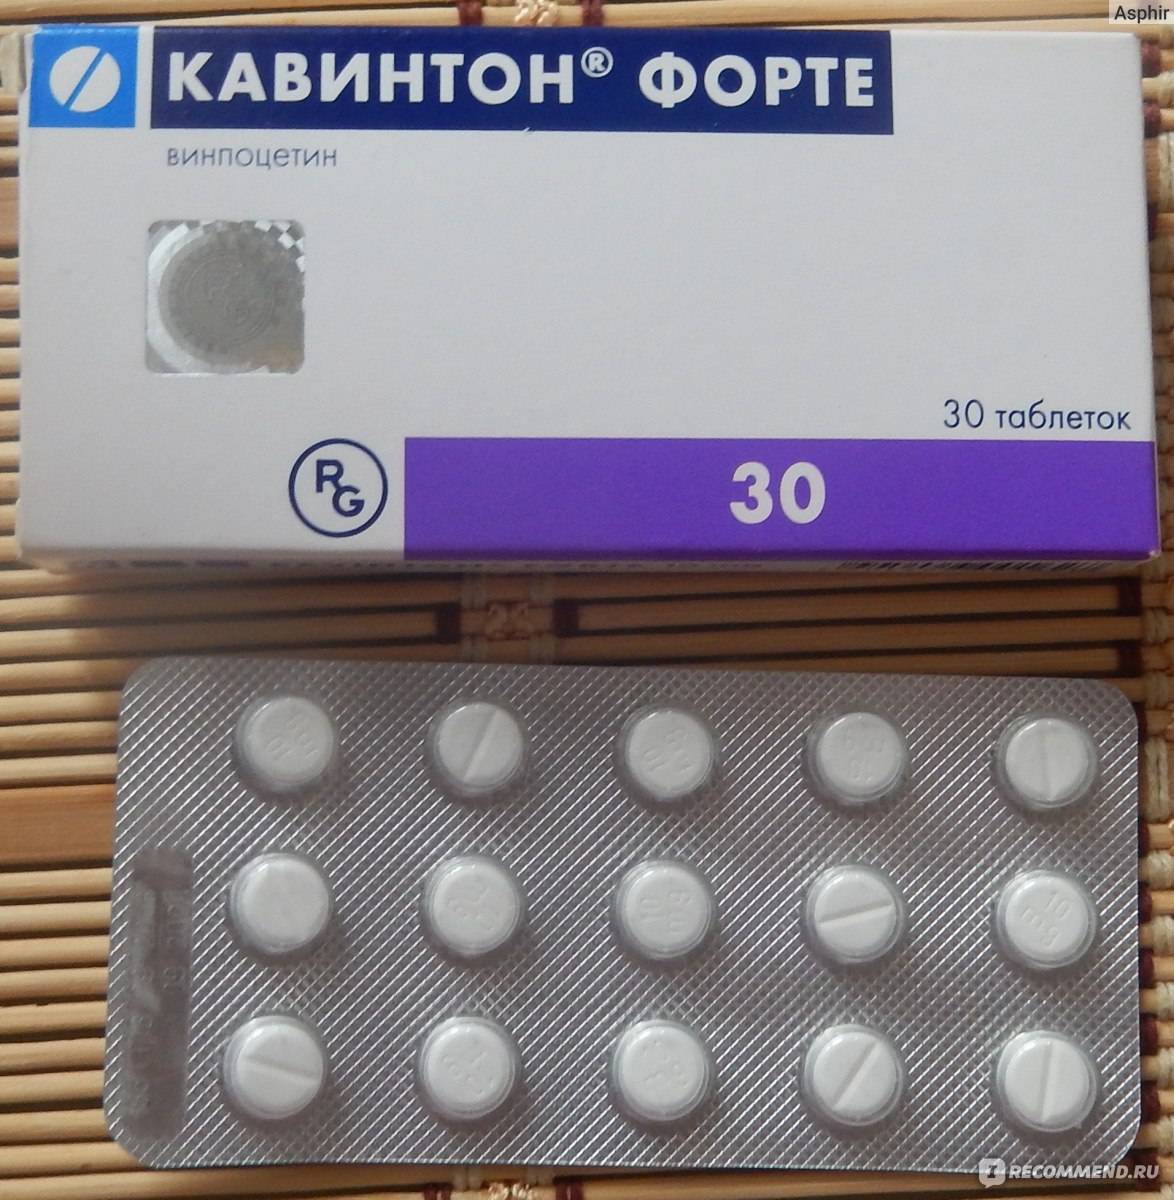 Кавинтон: дешевые аналоги и заменители, цены на российские и иностранные препараты